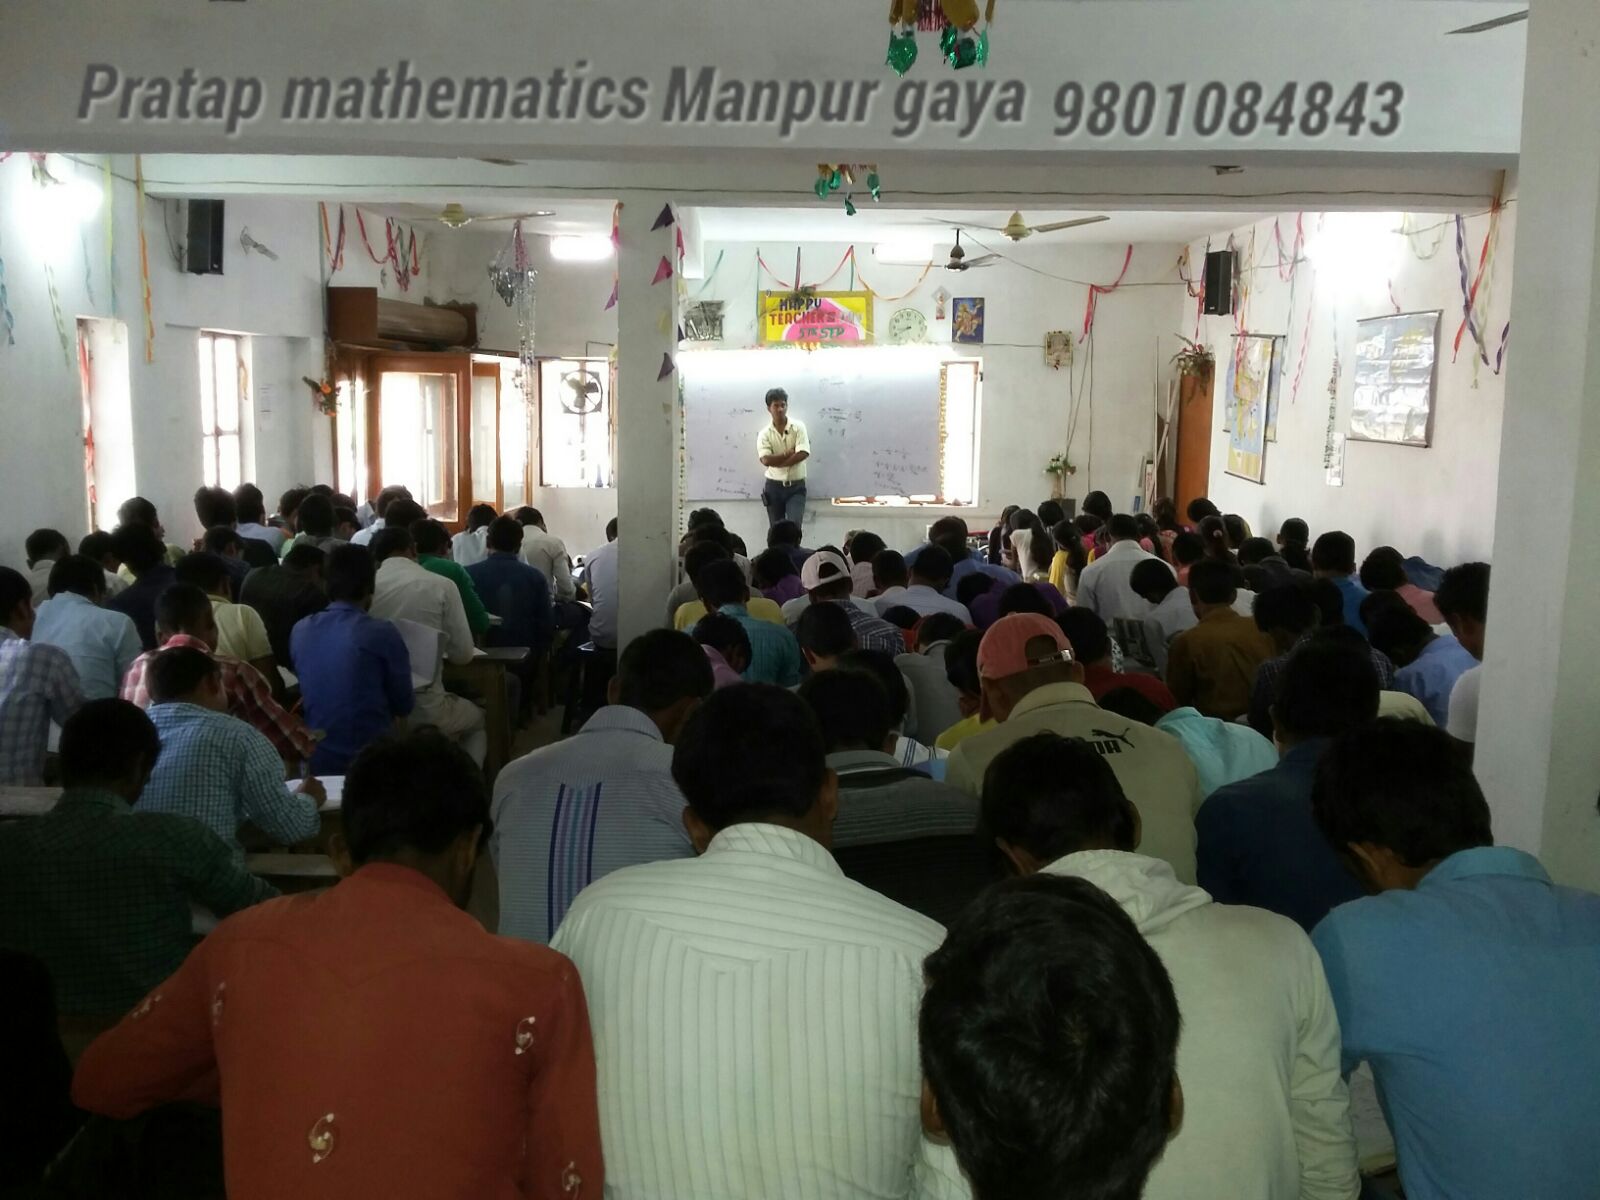 top mathematics class in manpur gaya